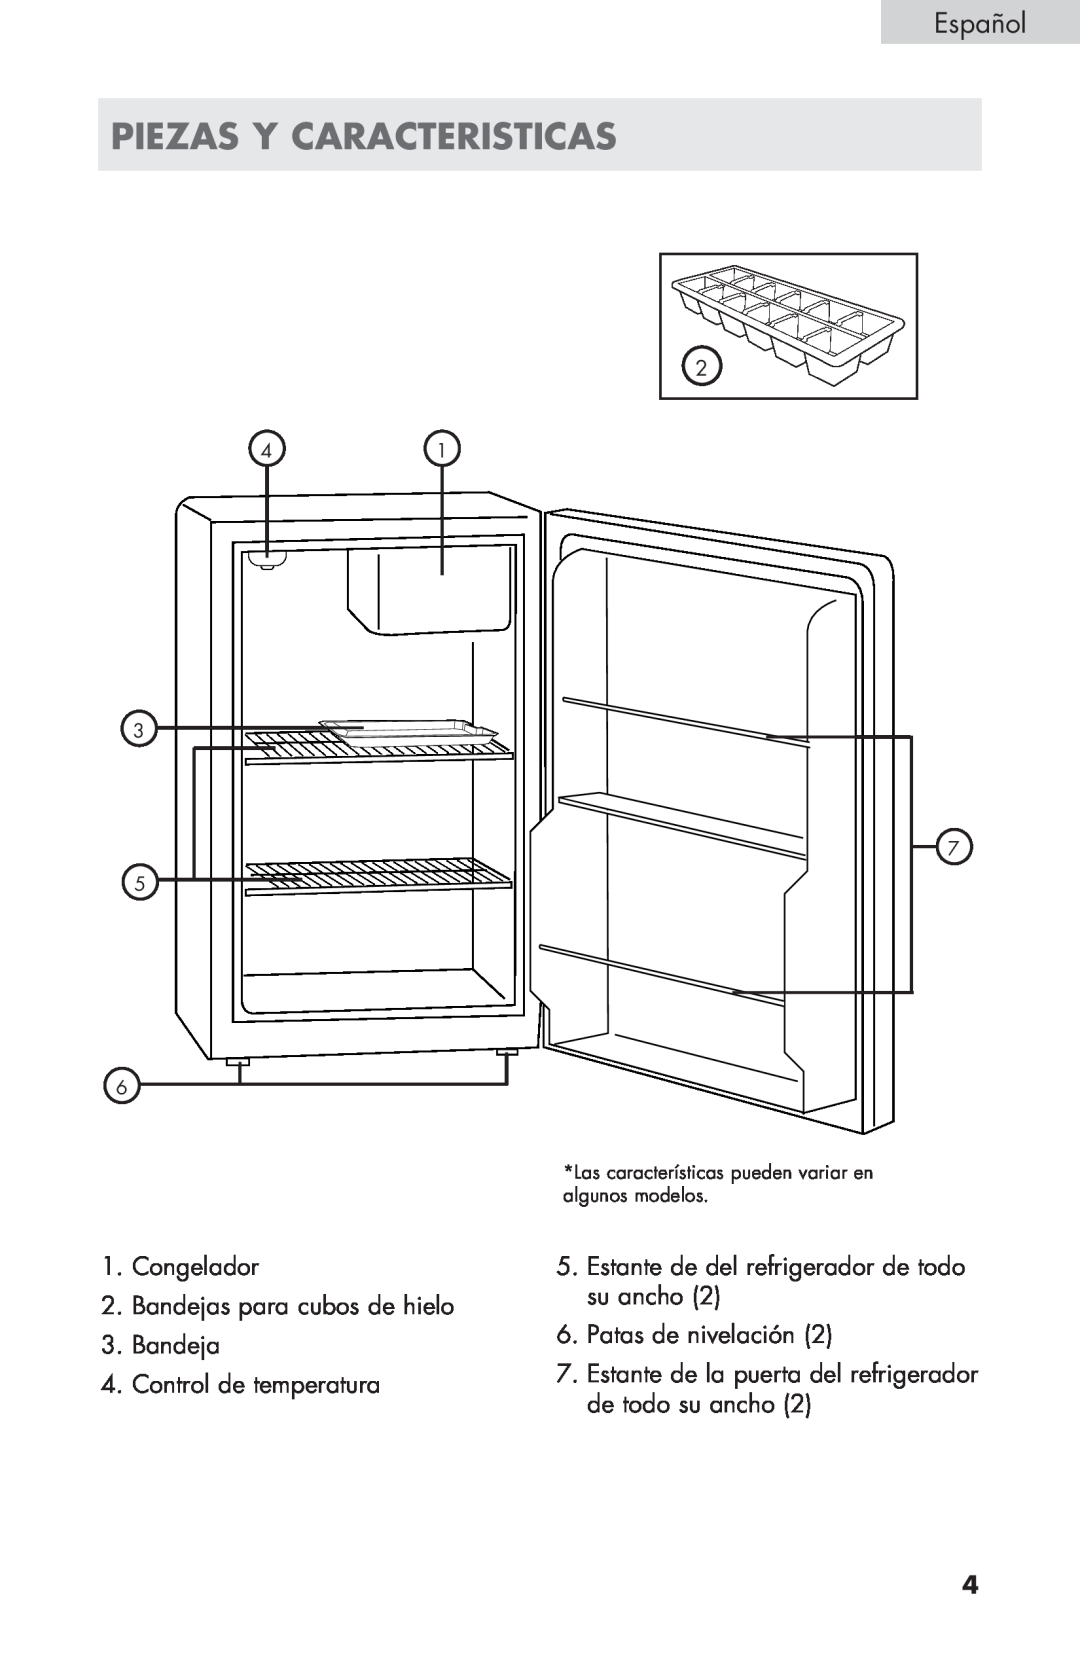 Haier ECR27B warranty piezas y caracteristicas, Congelador 2.Bandejas para cubos de hielo, Bandeja 4.Control de temperatura 